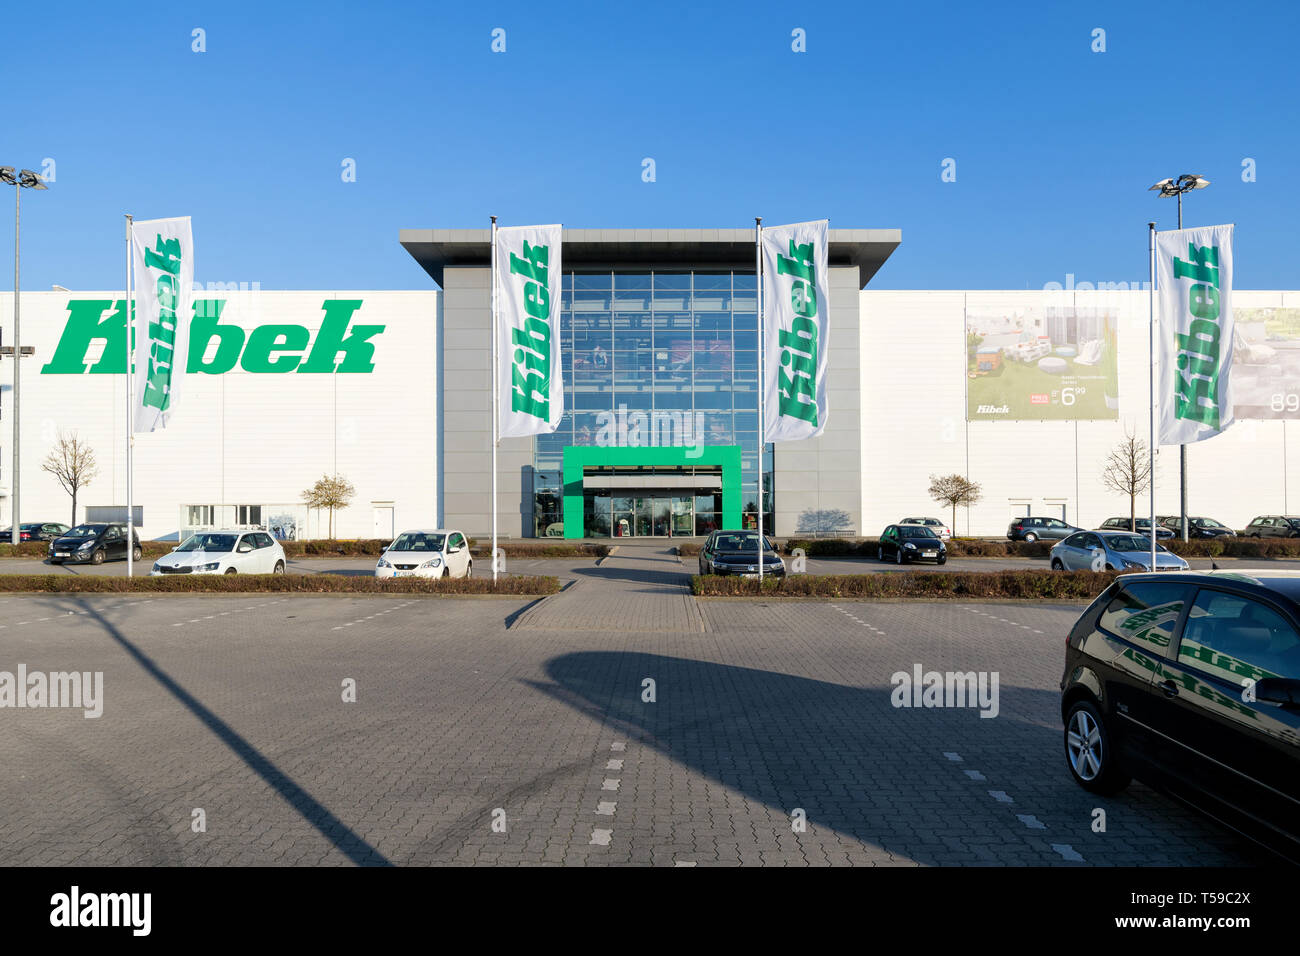 Kibek in Elmshorn. Teppich Kibek GmbH ist einer der größten deutschen Distributoren von Teppichen. Stockfoto